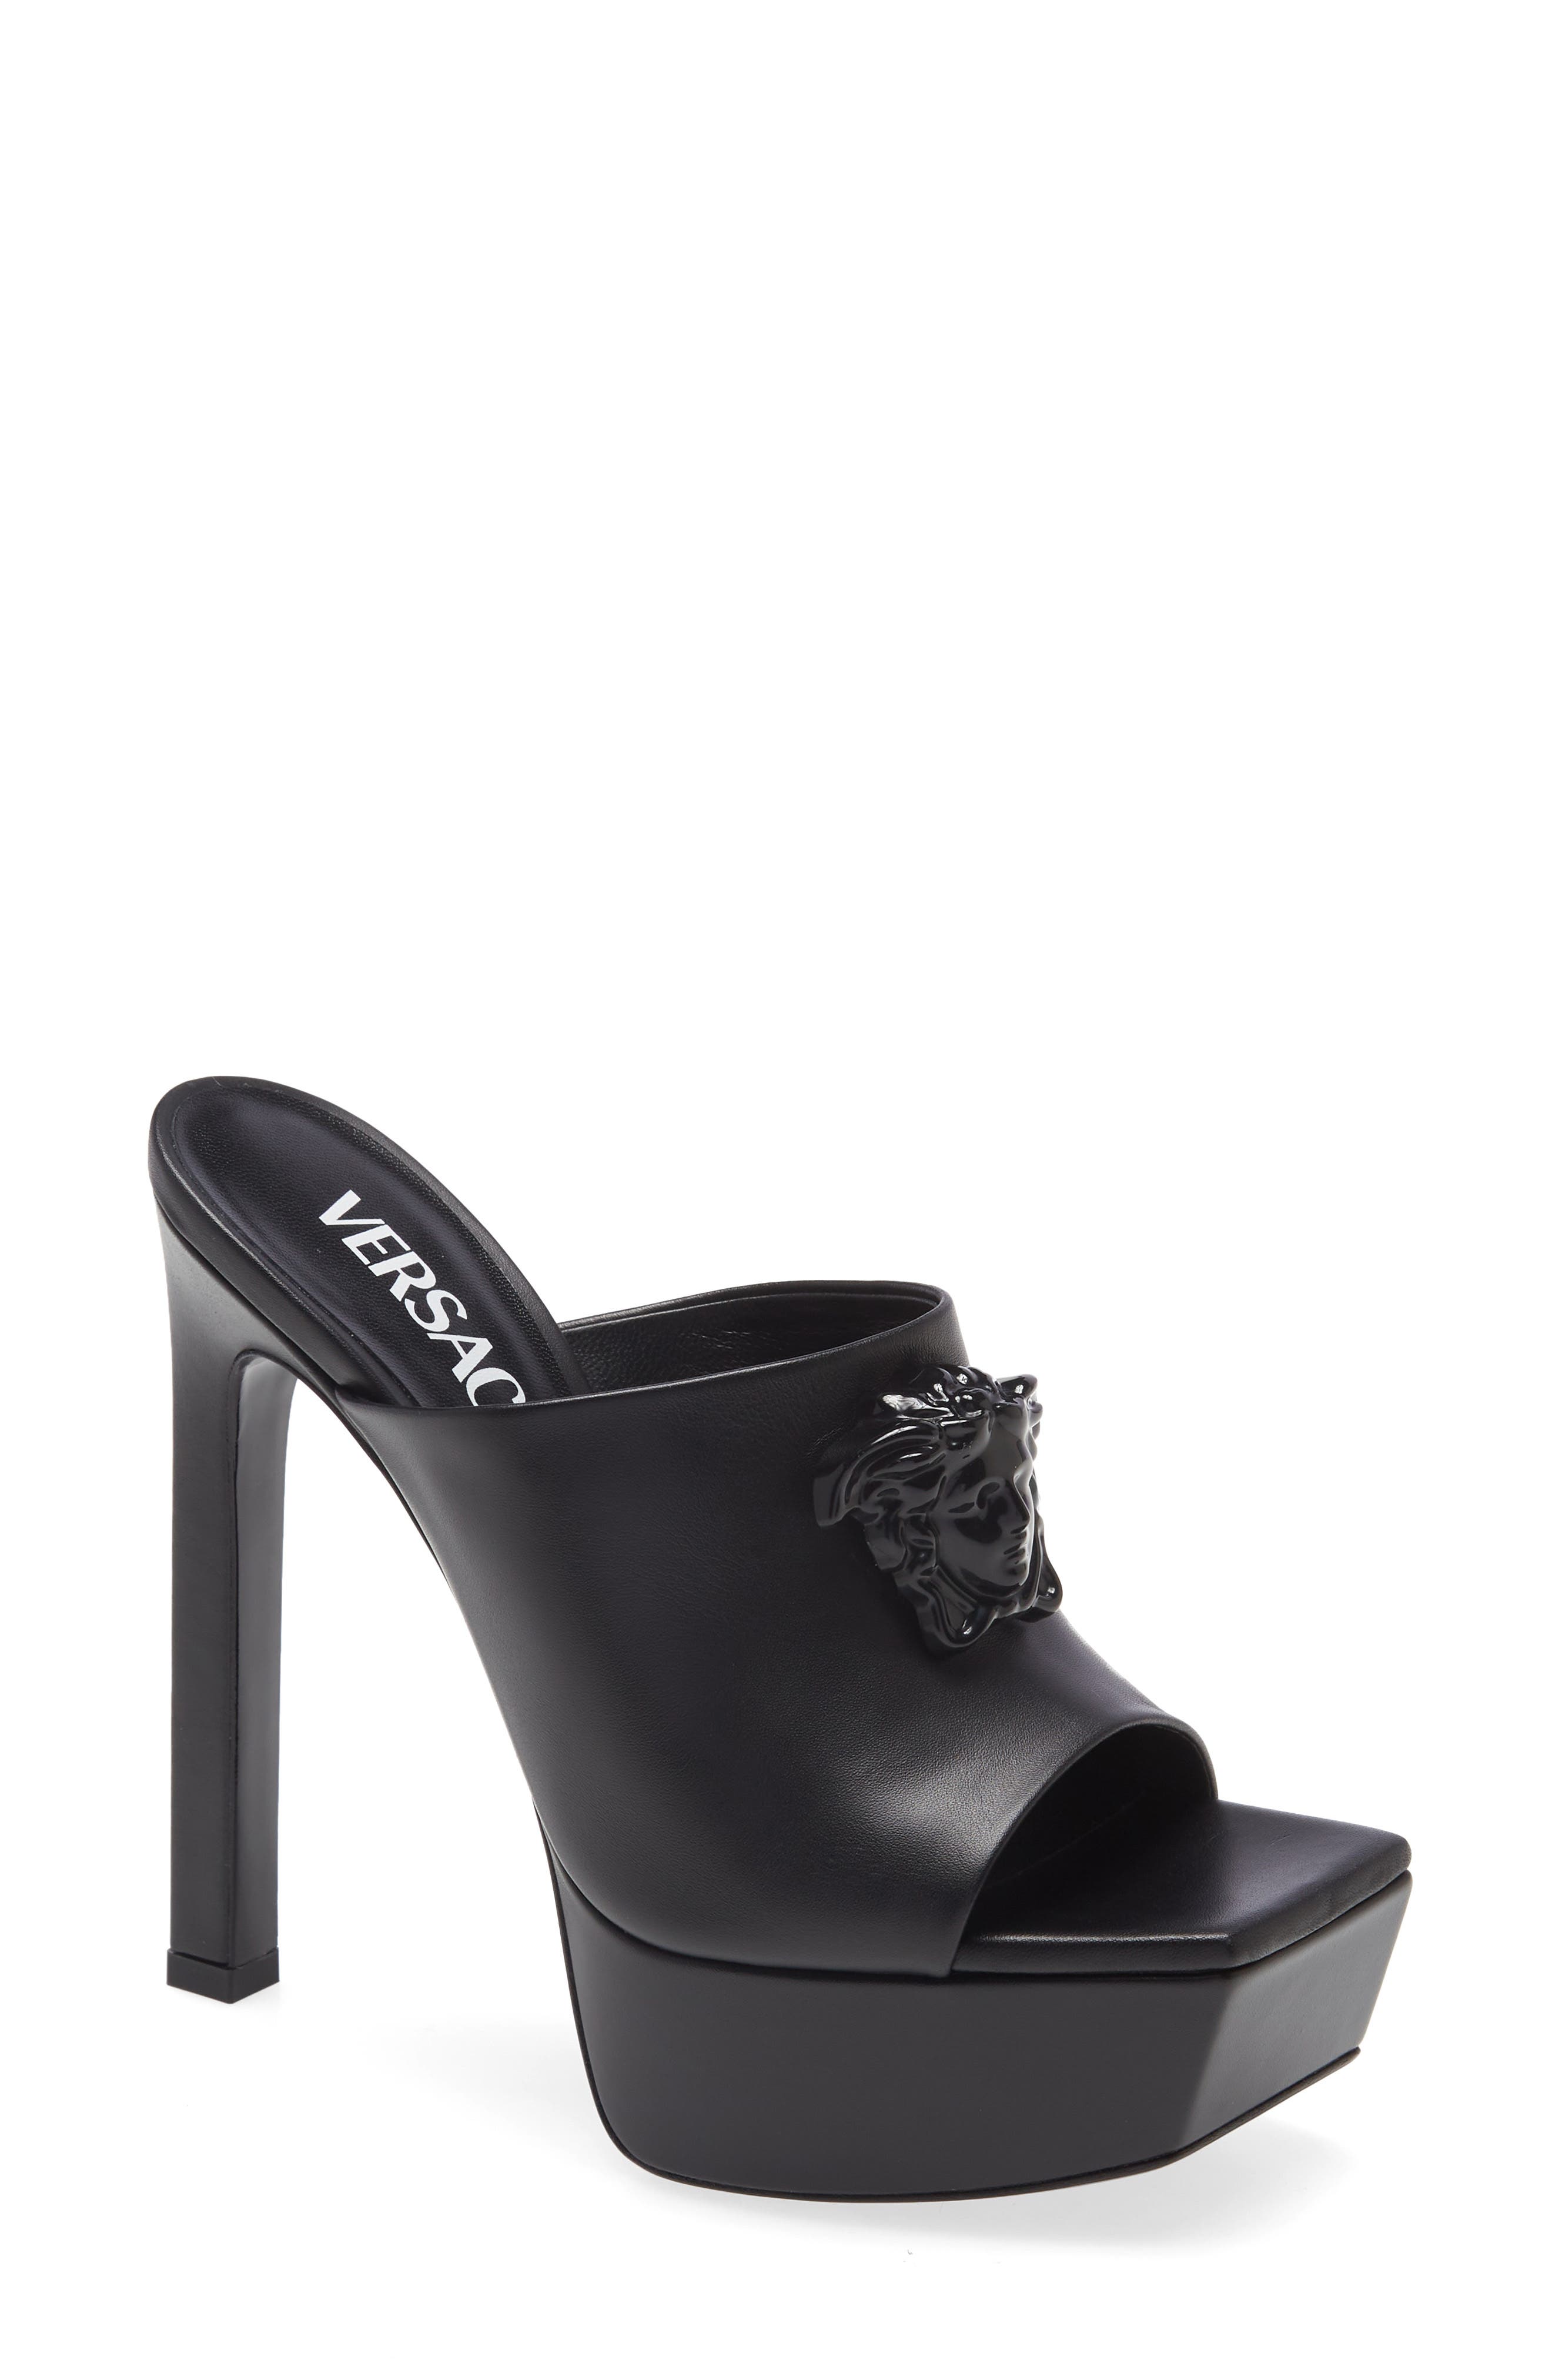 Versace Medusa Platform Slide Sandal in Black Black at Nordstrom, Size 6Us